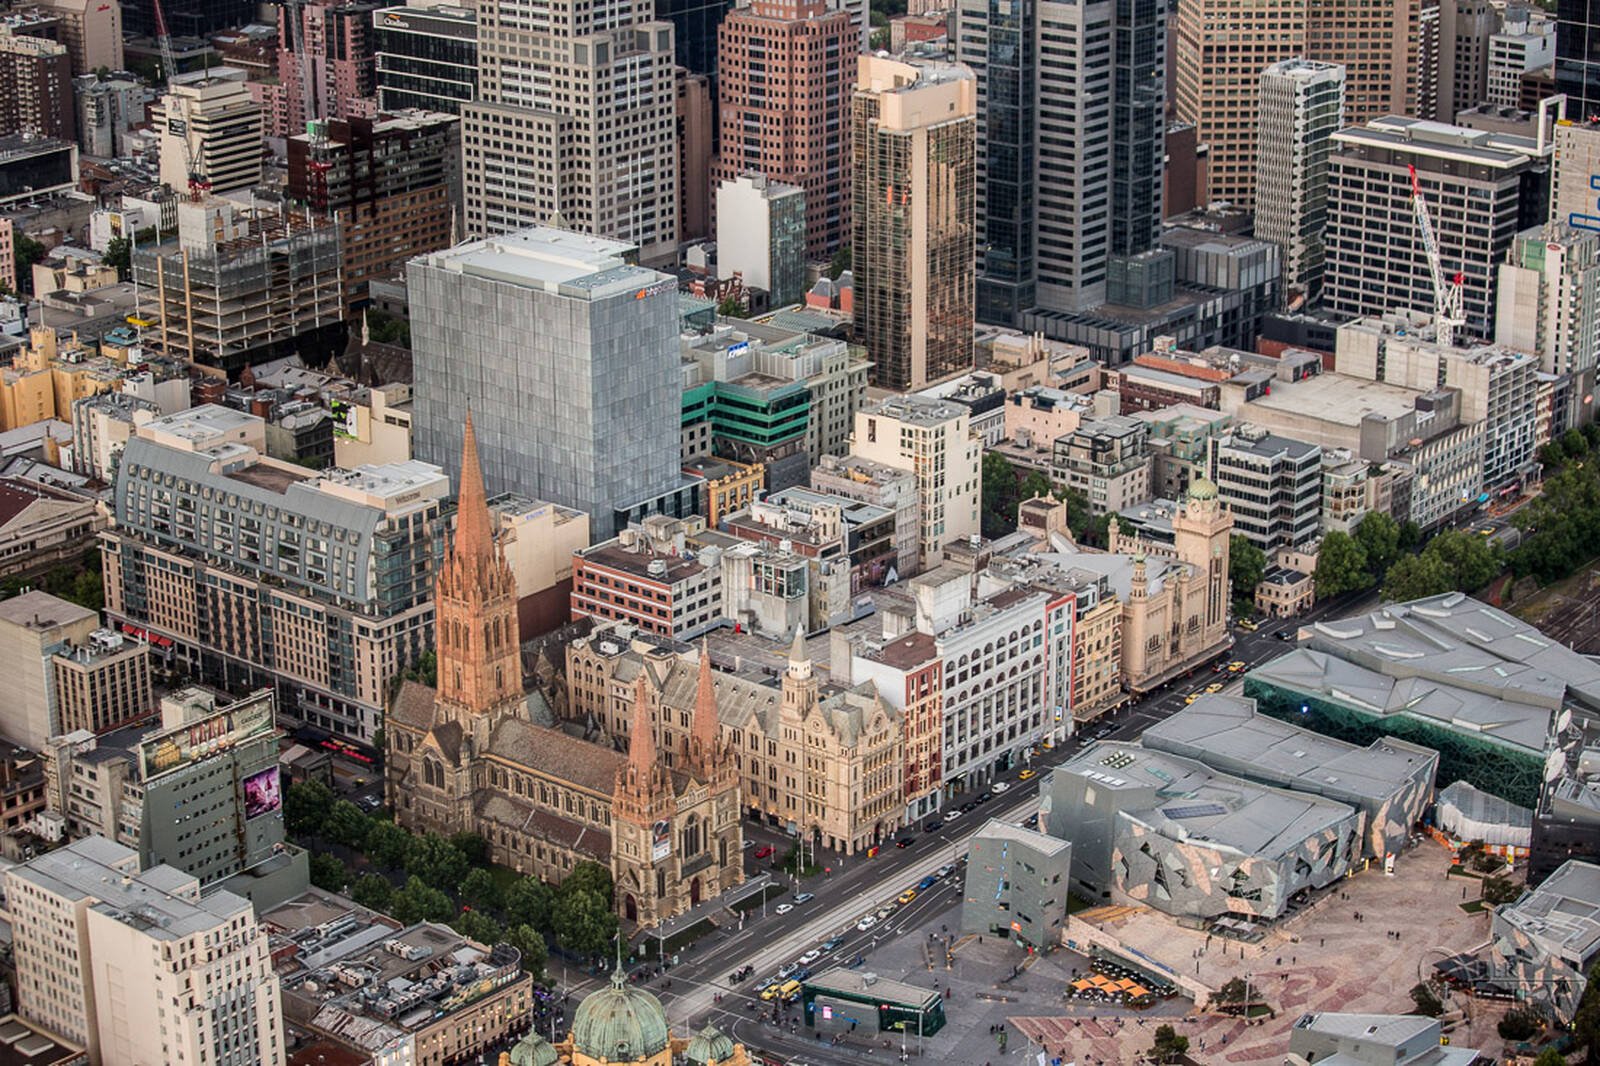 Image of Melbourne Skydeck by Darlene Hildebrandt